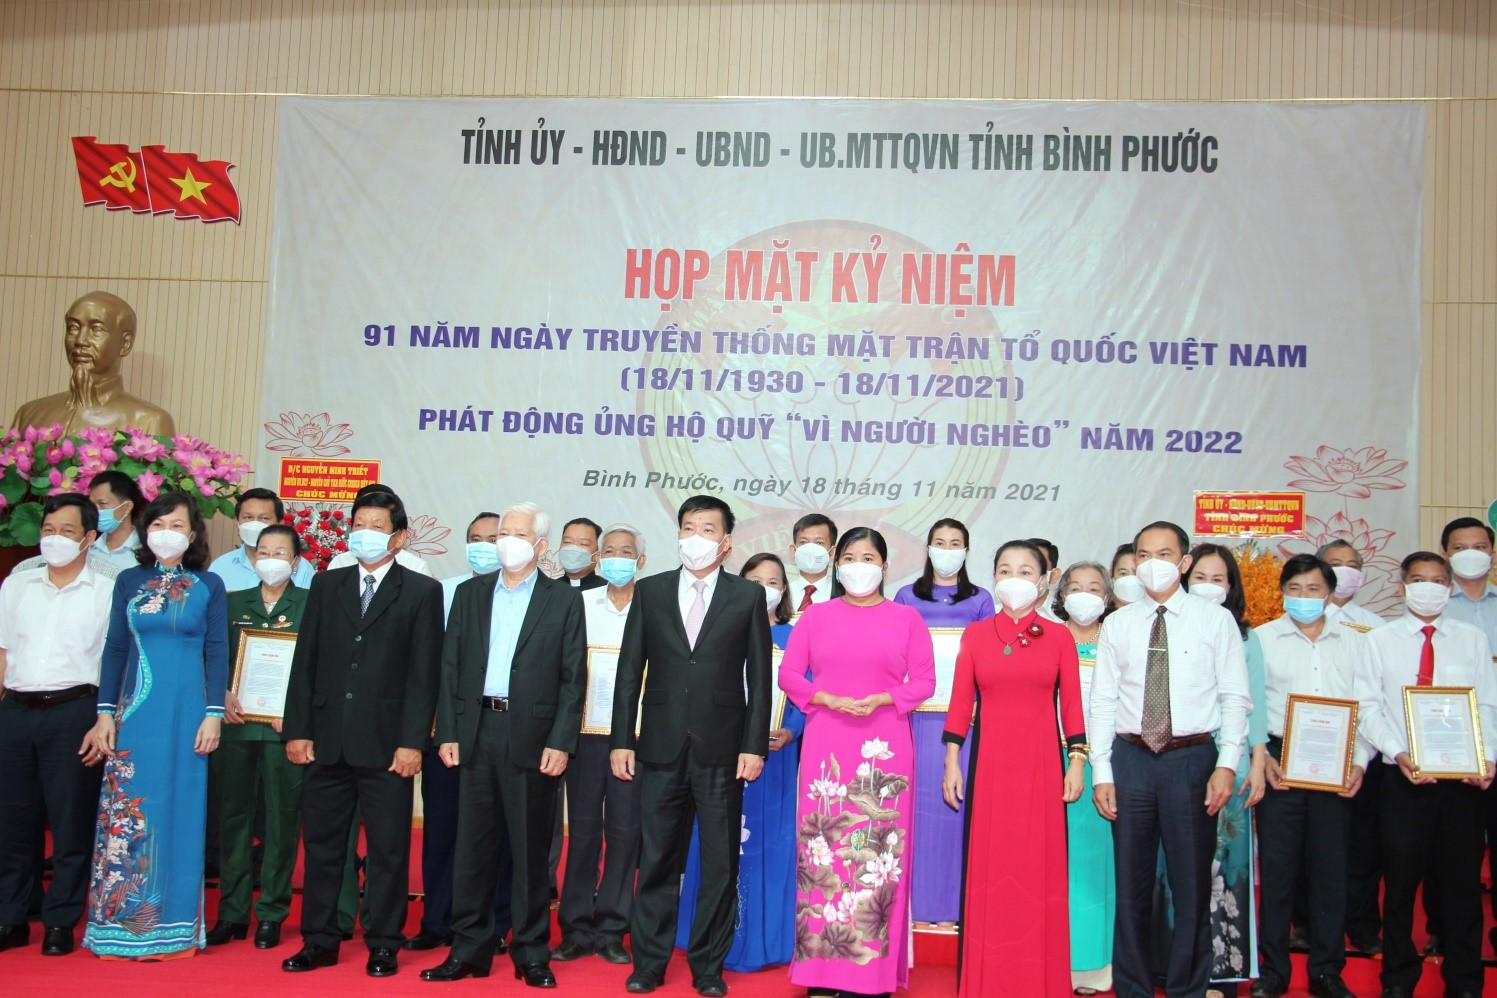 Đồng chí Nguyễn Minh Triết, nguyên Ủy viên bộ Chính trị, Nguyên Chủ tịch nước CHXHCNVN chụp hình lưu niệm với các lãnh đạo tỉnh và đại diện các doanh nghiệp, các mạnh thường quân ủng hộ Quỹ “vì người nghèo”